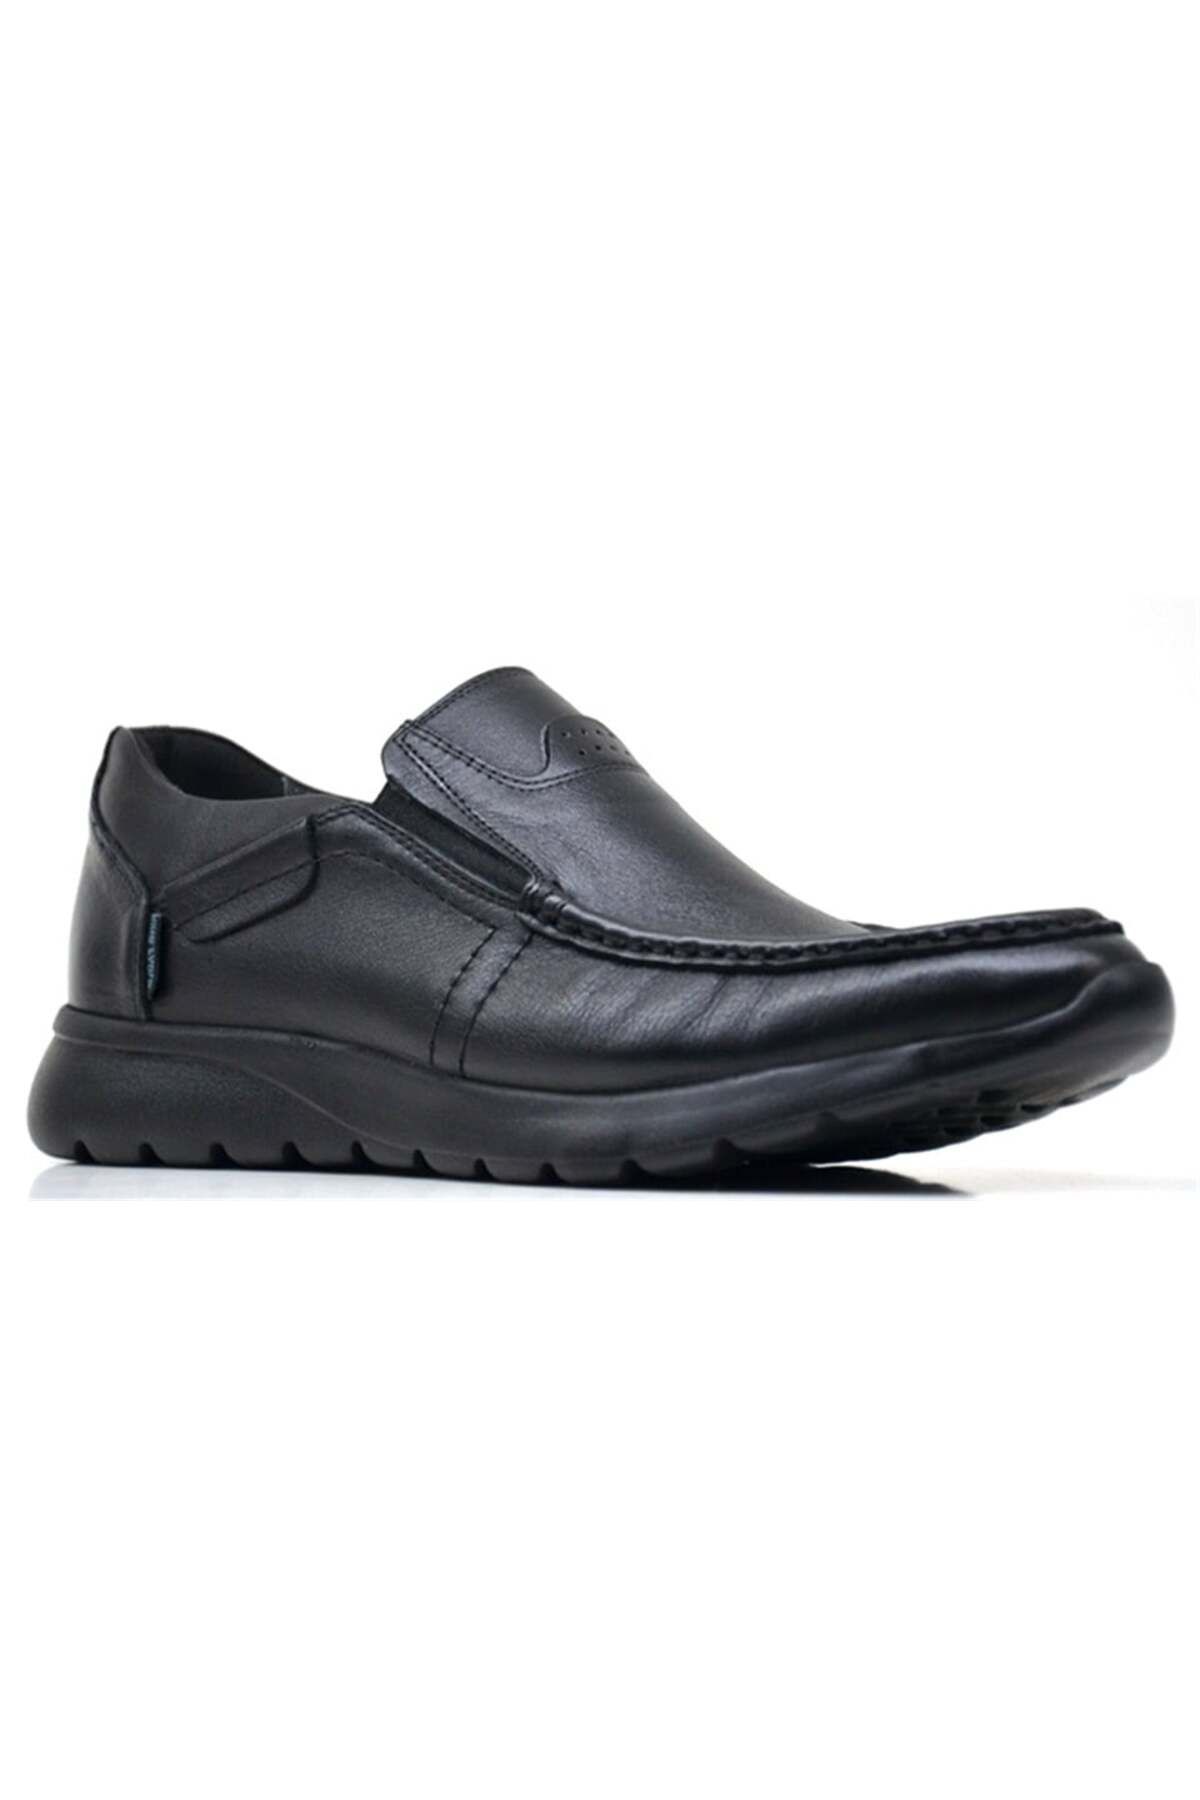 KİNG PAOLO King Paolo S9313 Comforevo Günlük - Siyah - Erkek Ayakkabı,deri Ayakkabı